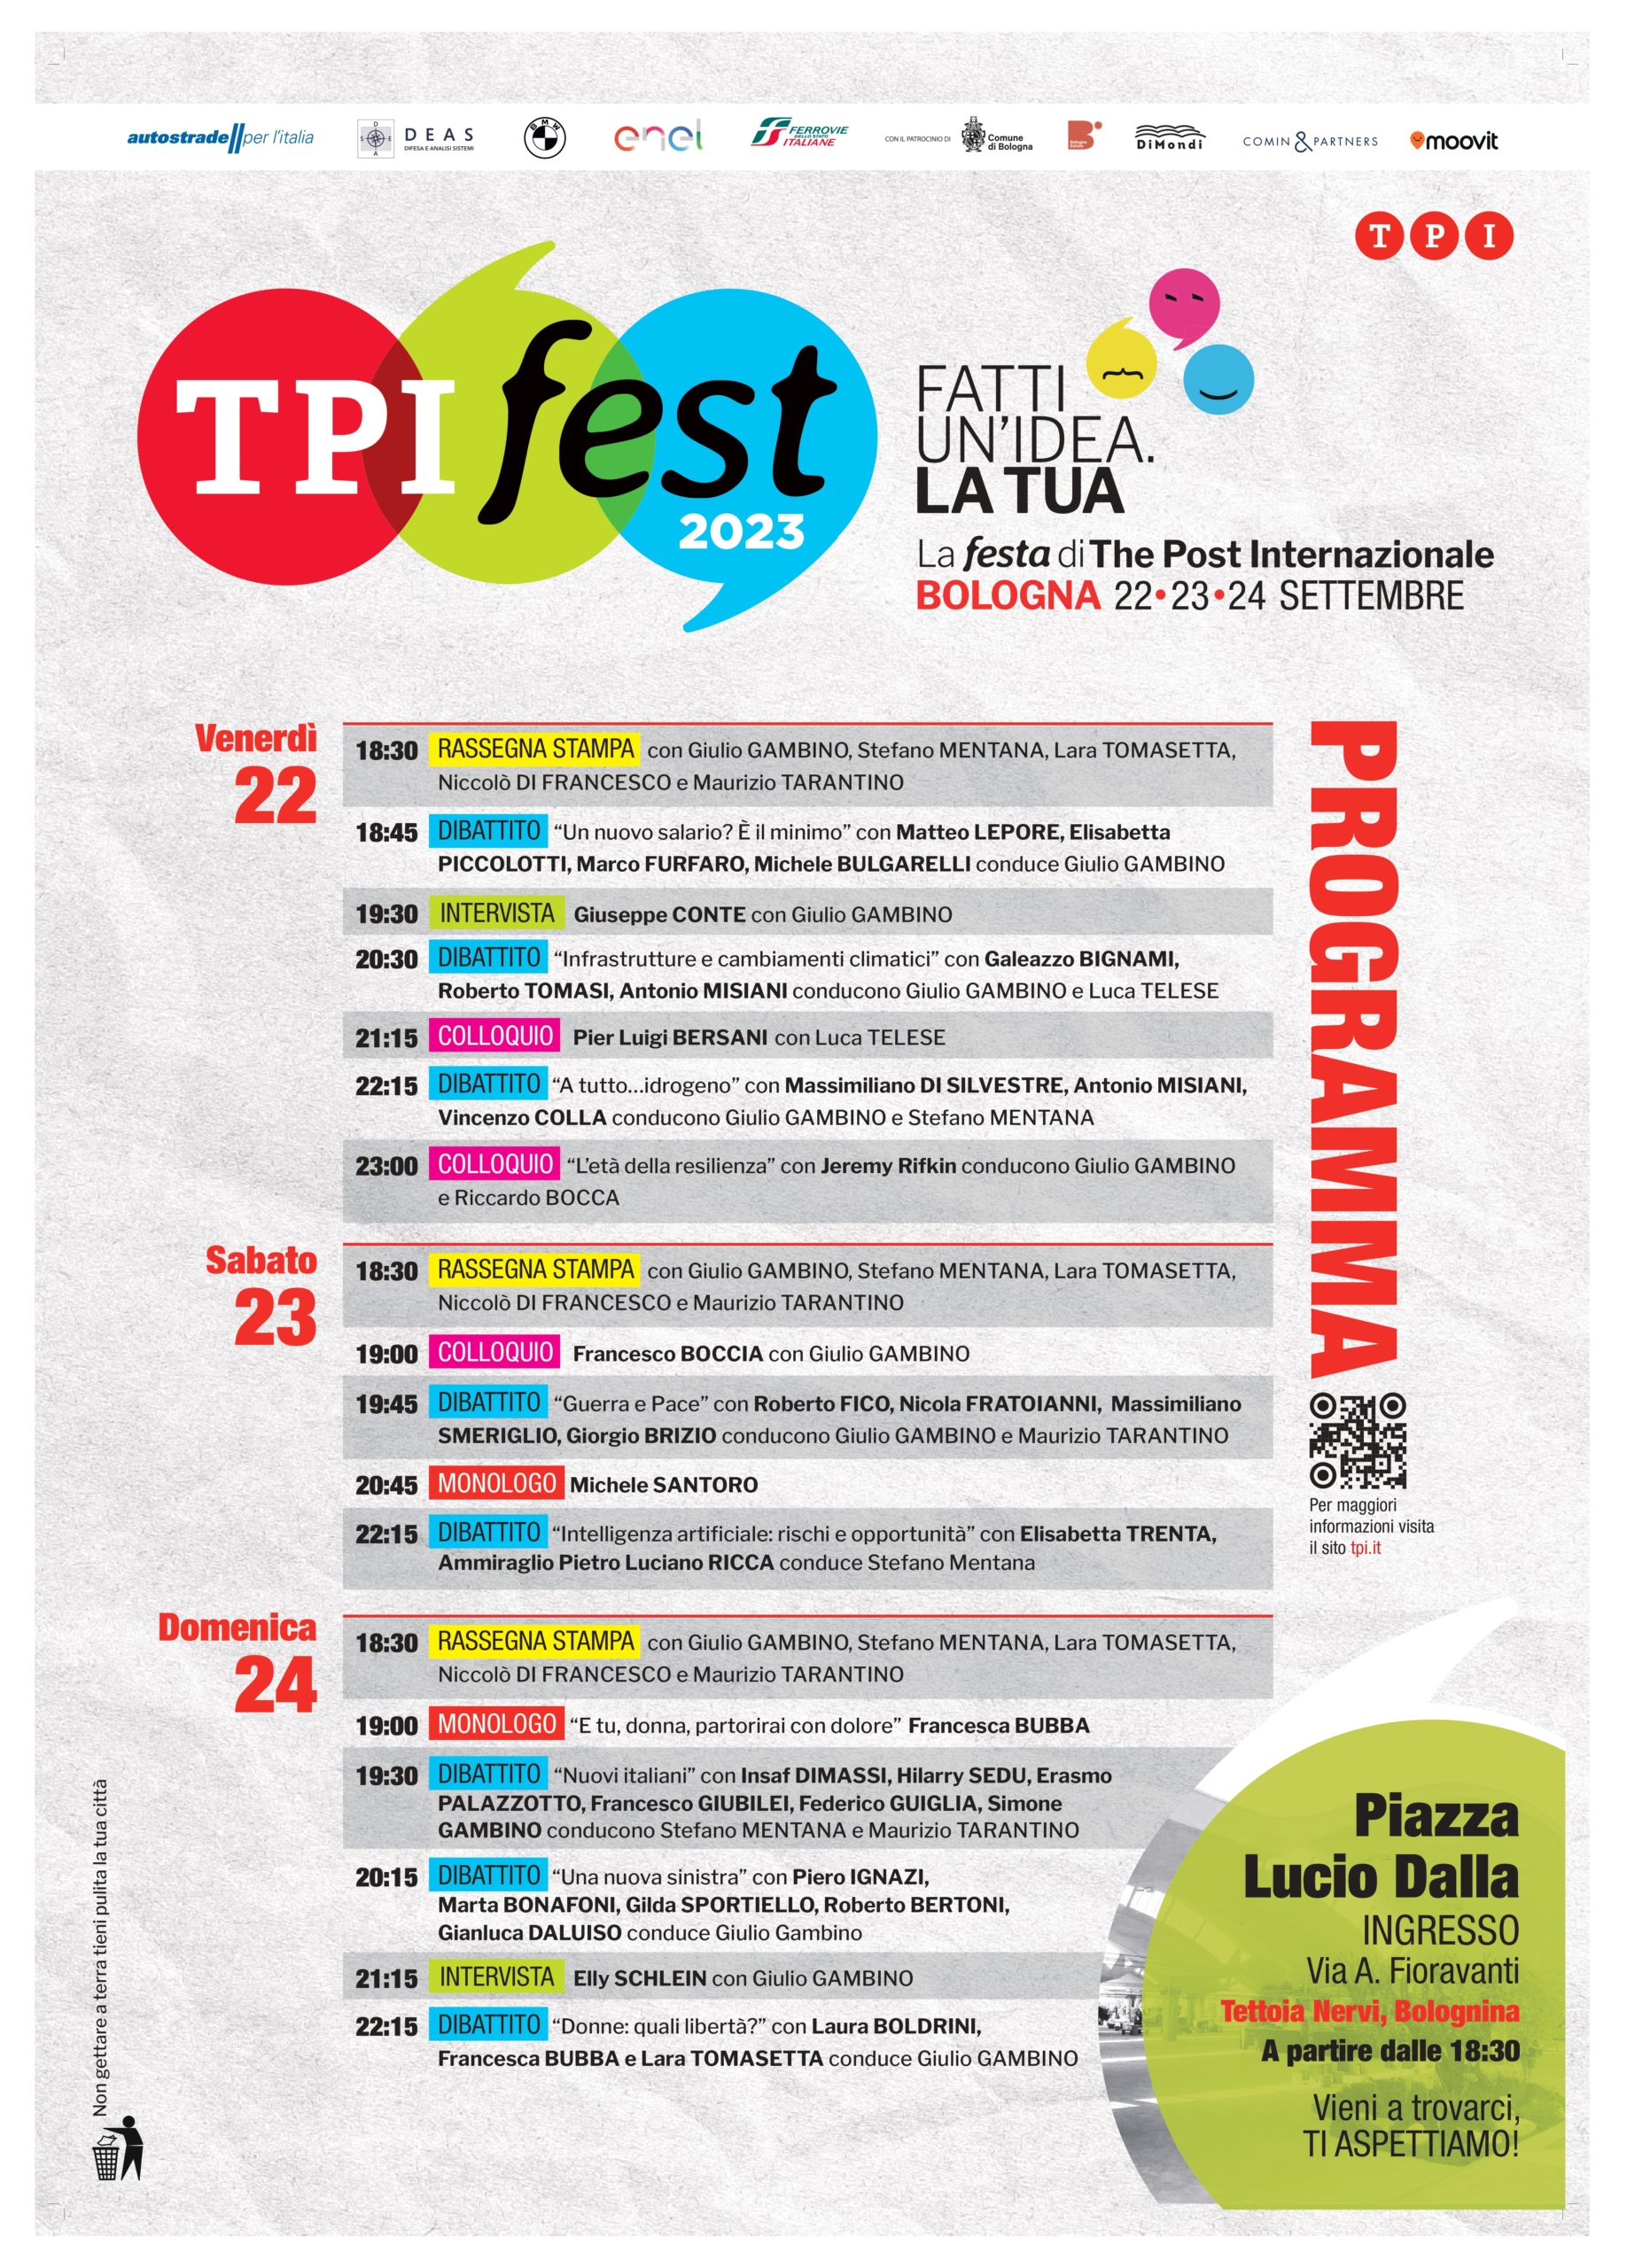 TPI Fest 2023, il direttore Gambino al Corriere di Bologna: “Vogliamo avviare un dialogo tra chi si colloca ideologicamente a sinistra”